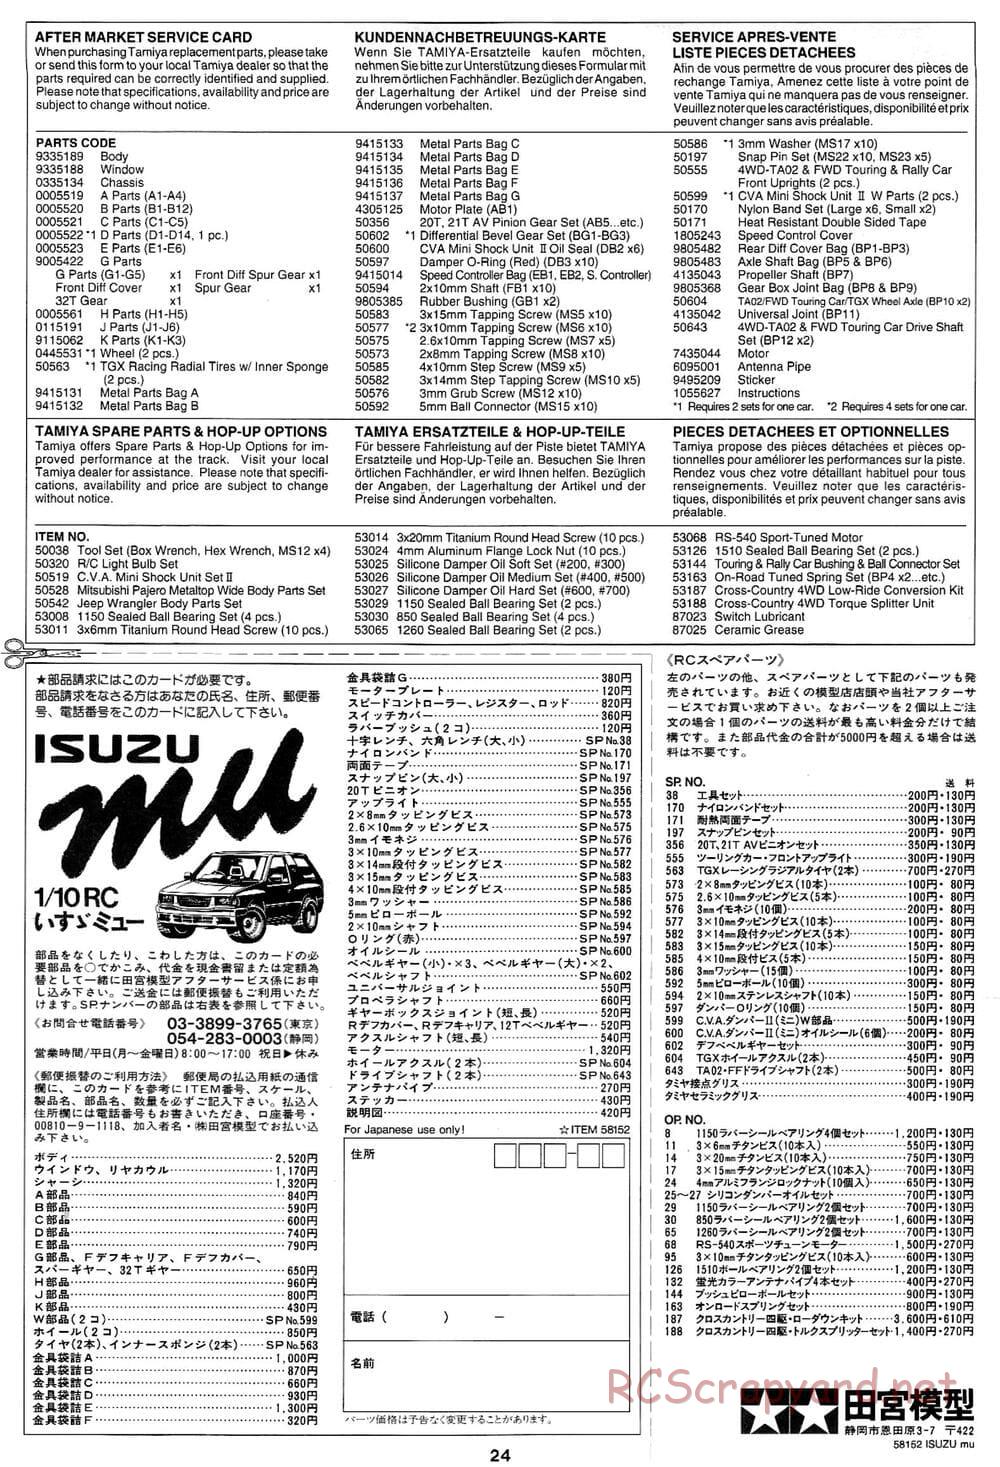 Tamiya - Isuzu Mu - CC-01 Chassis - Manual - Page 24